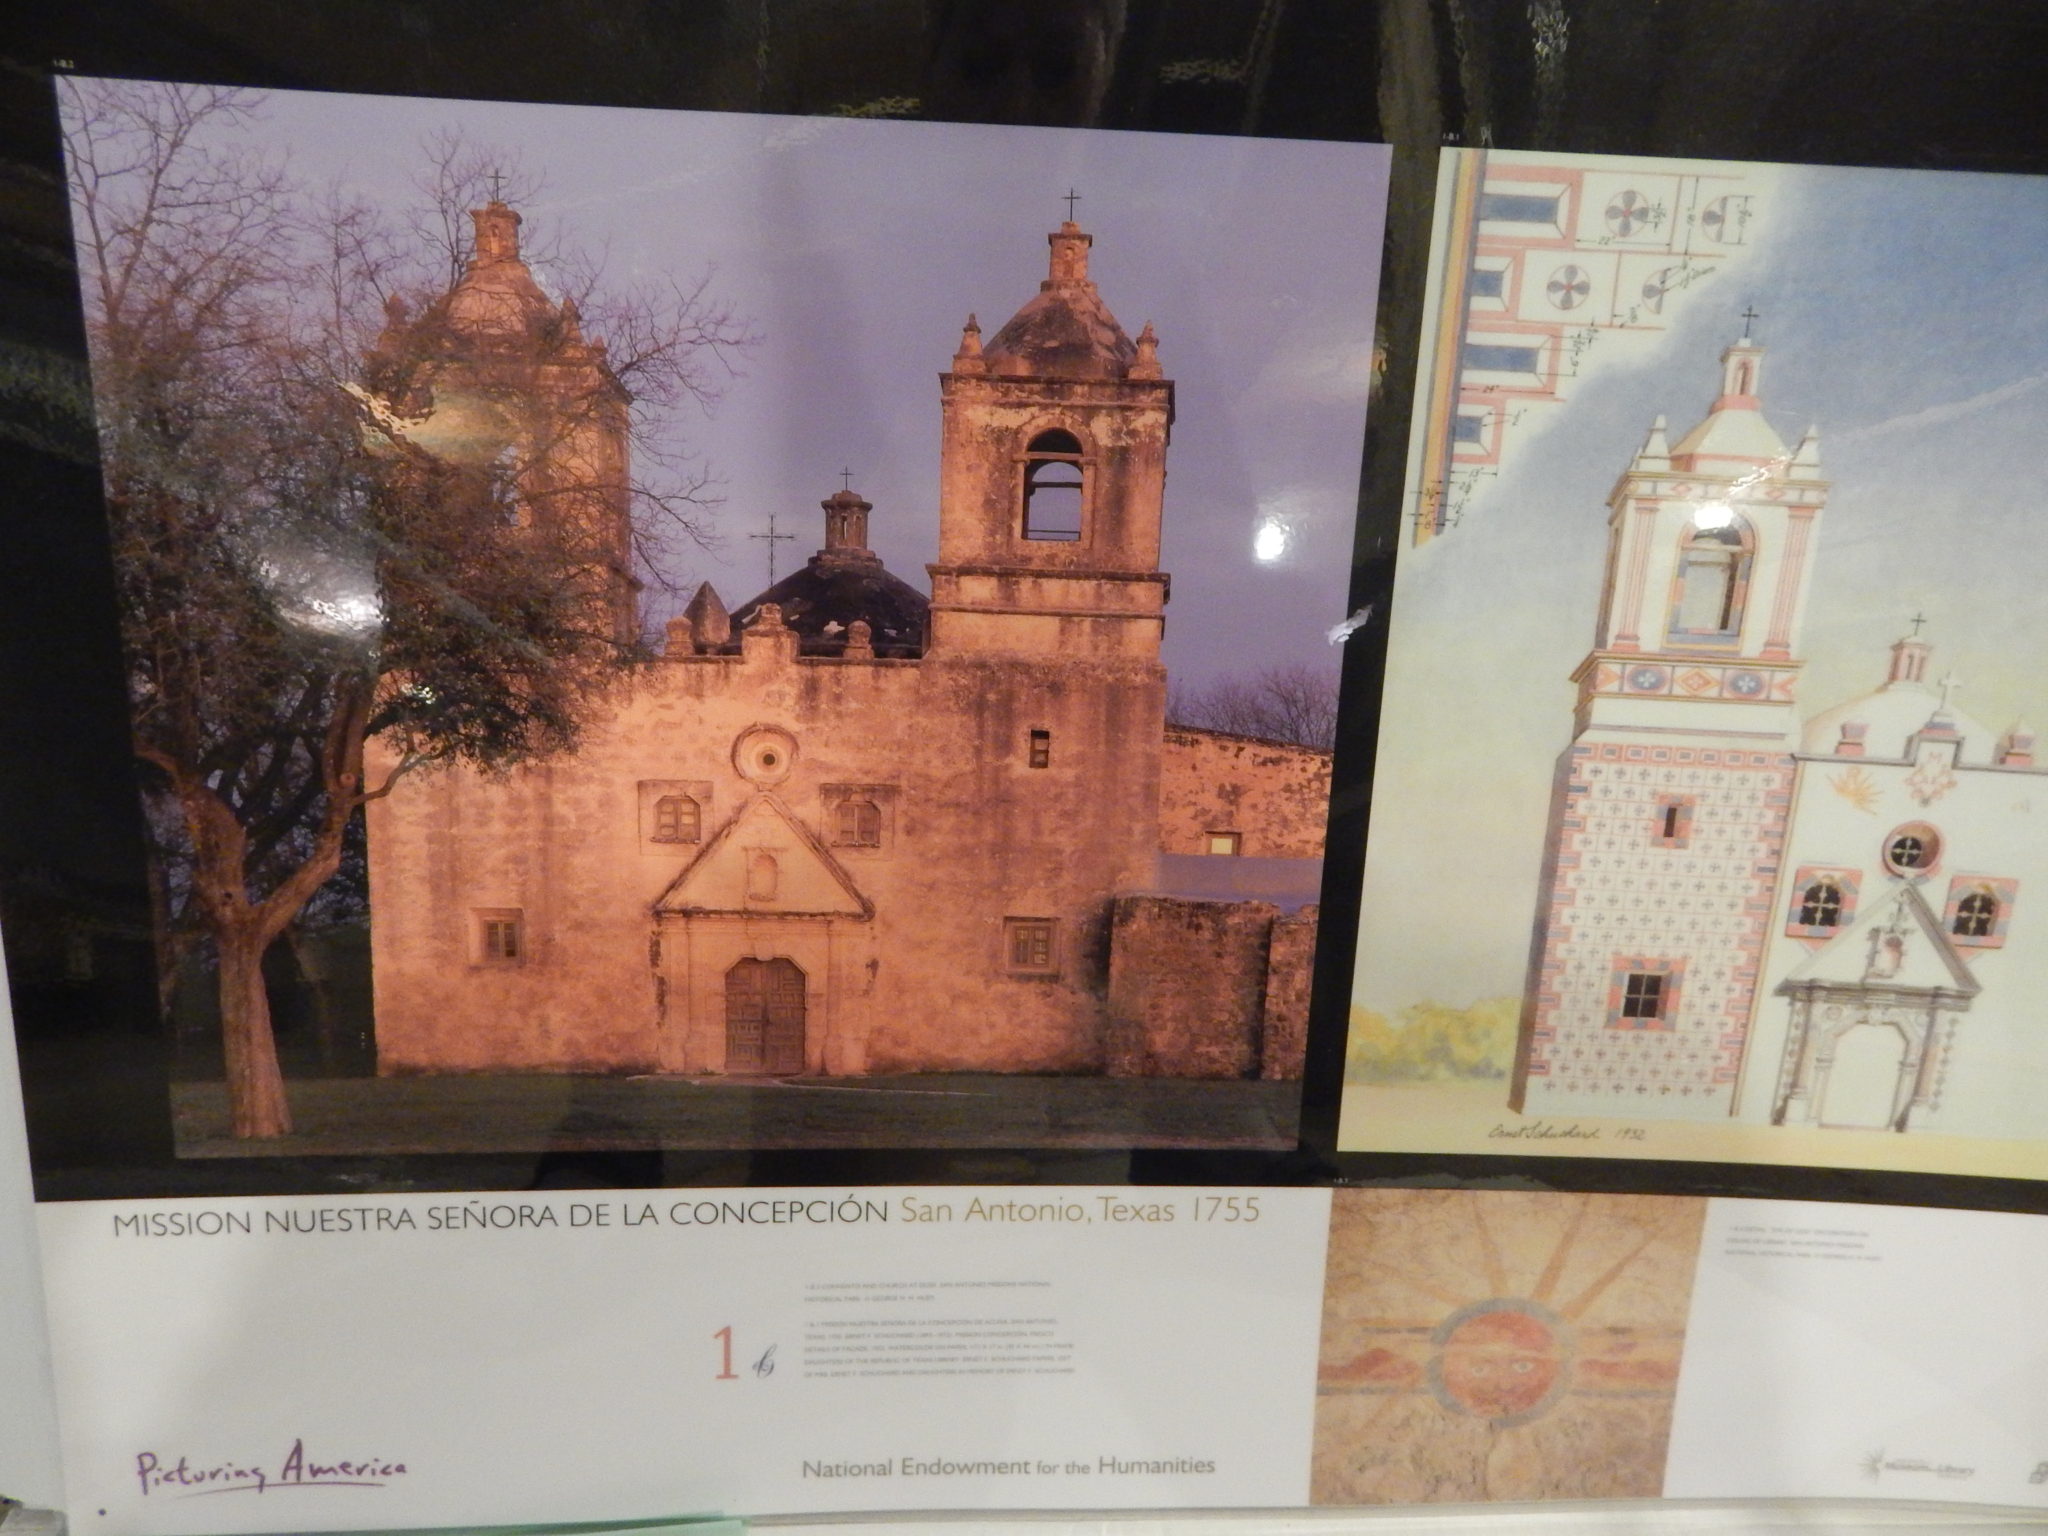 photo of San Antonio Mission Nuestra de la Concepcion